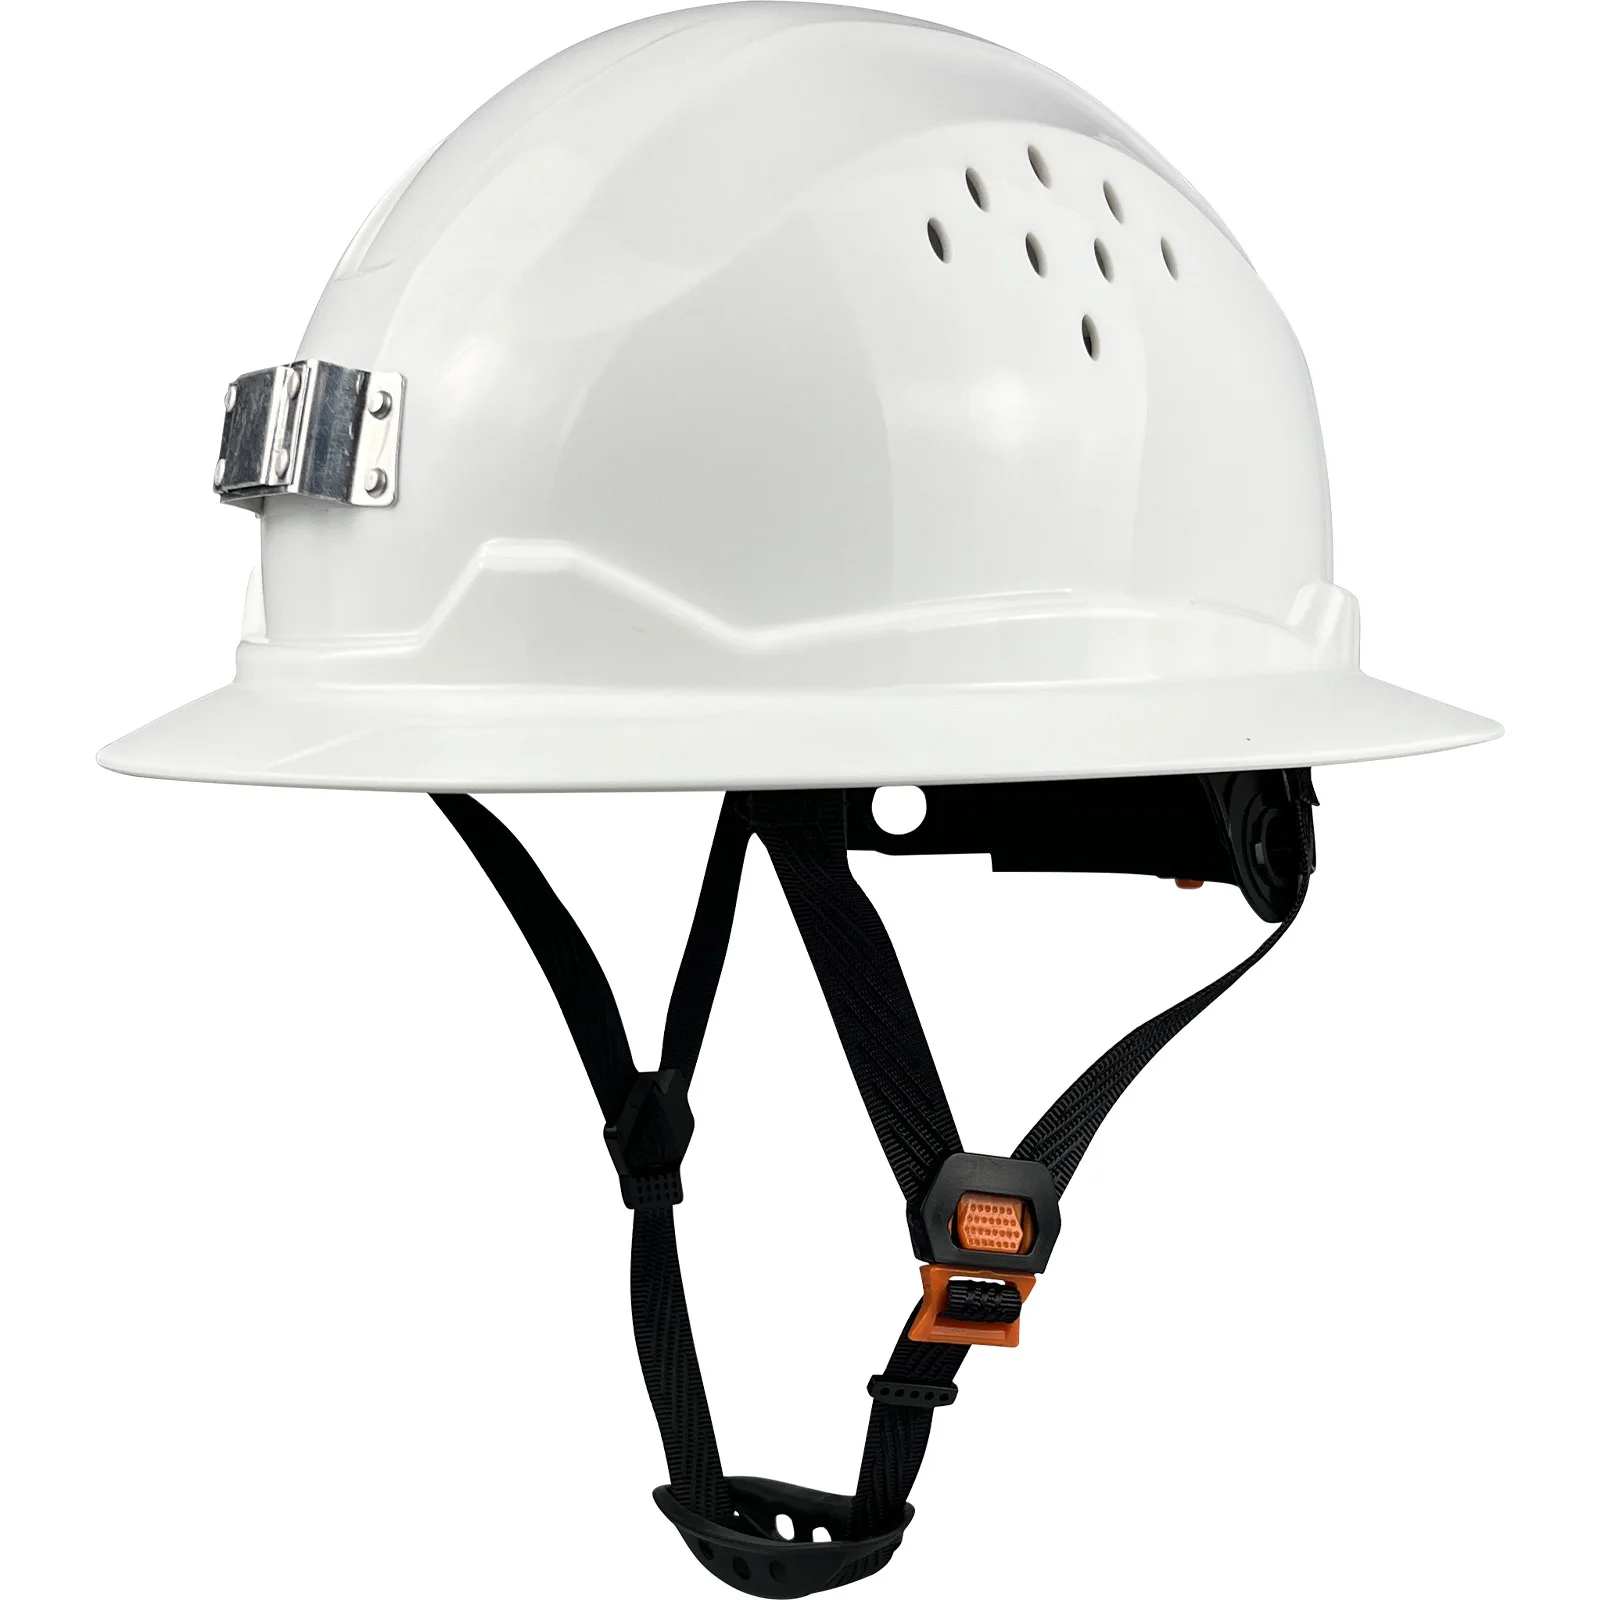 Новый тип защитного шлема для горных работ с держателем фары, Дышащая каска, рабочие накидки для мужчин, Промышленная защита головы Ansi